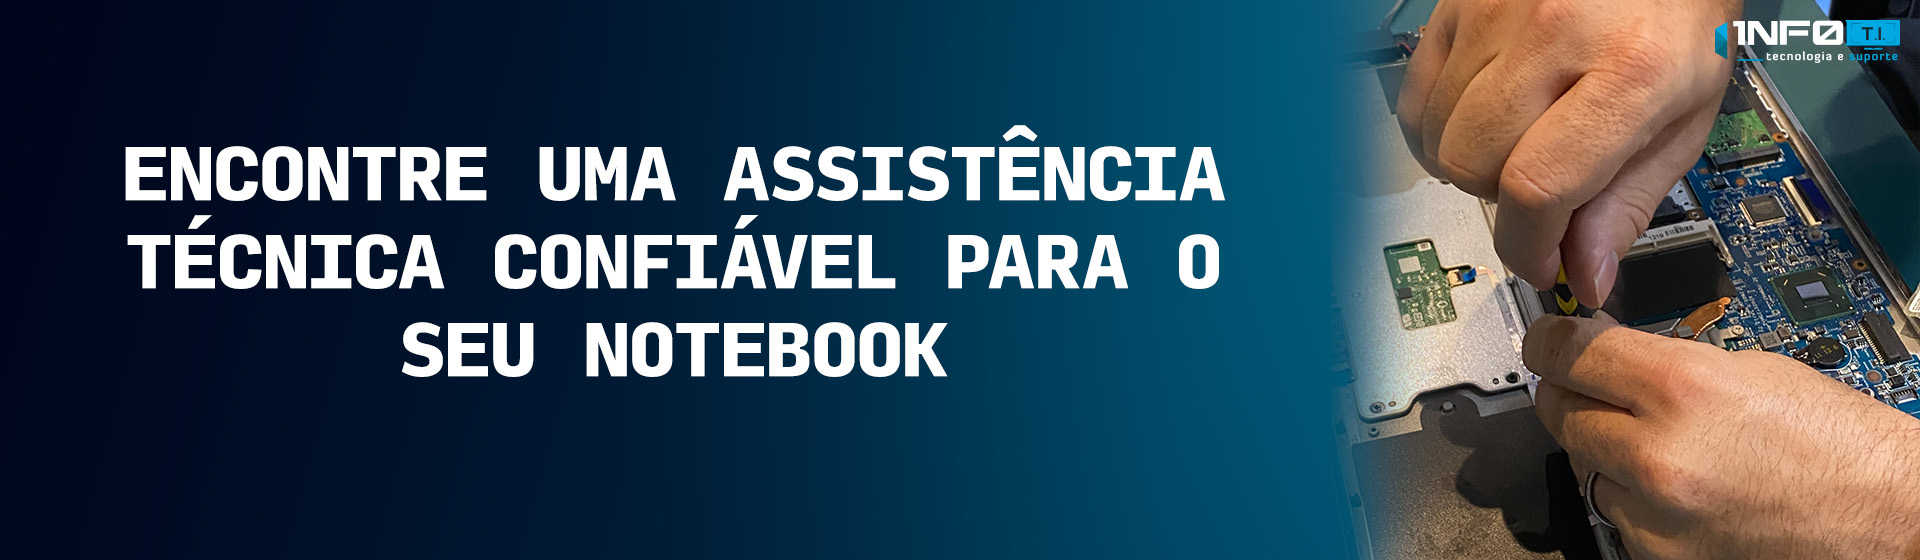 dicas_para_uma_boa_assistencia.jpg - 205,49 kB